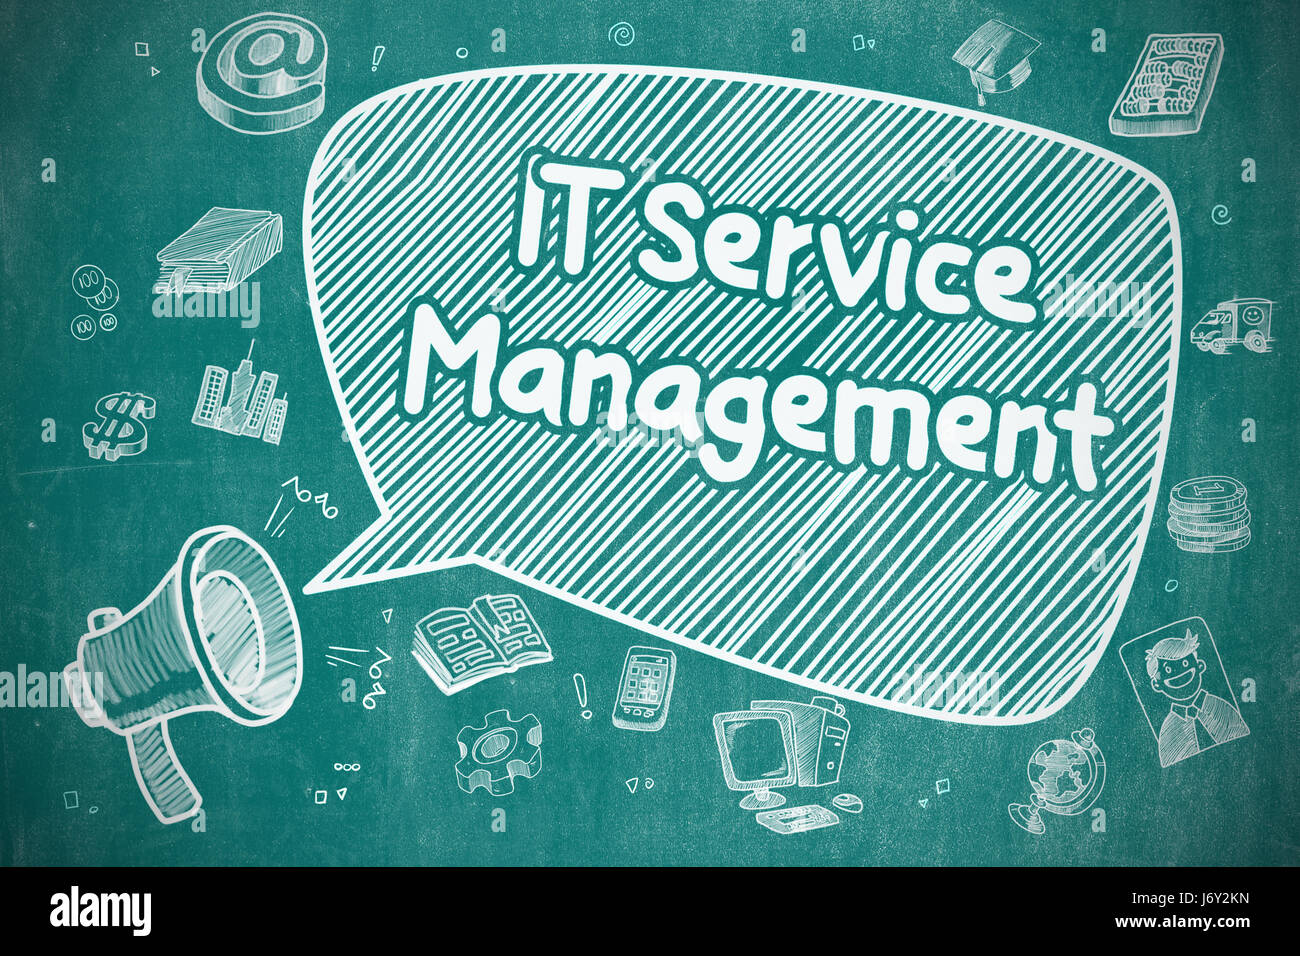 IT Service Management - Business Concept. Stock Photo